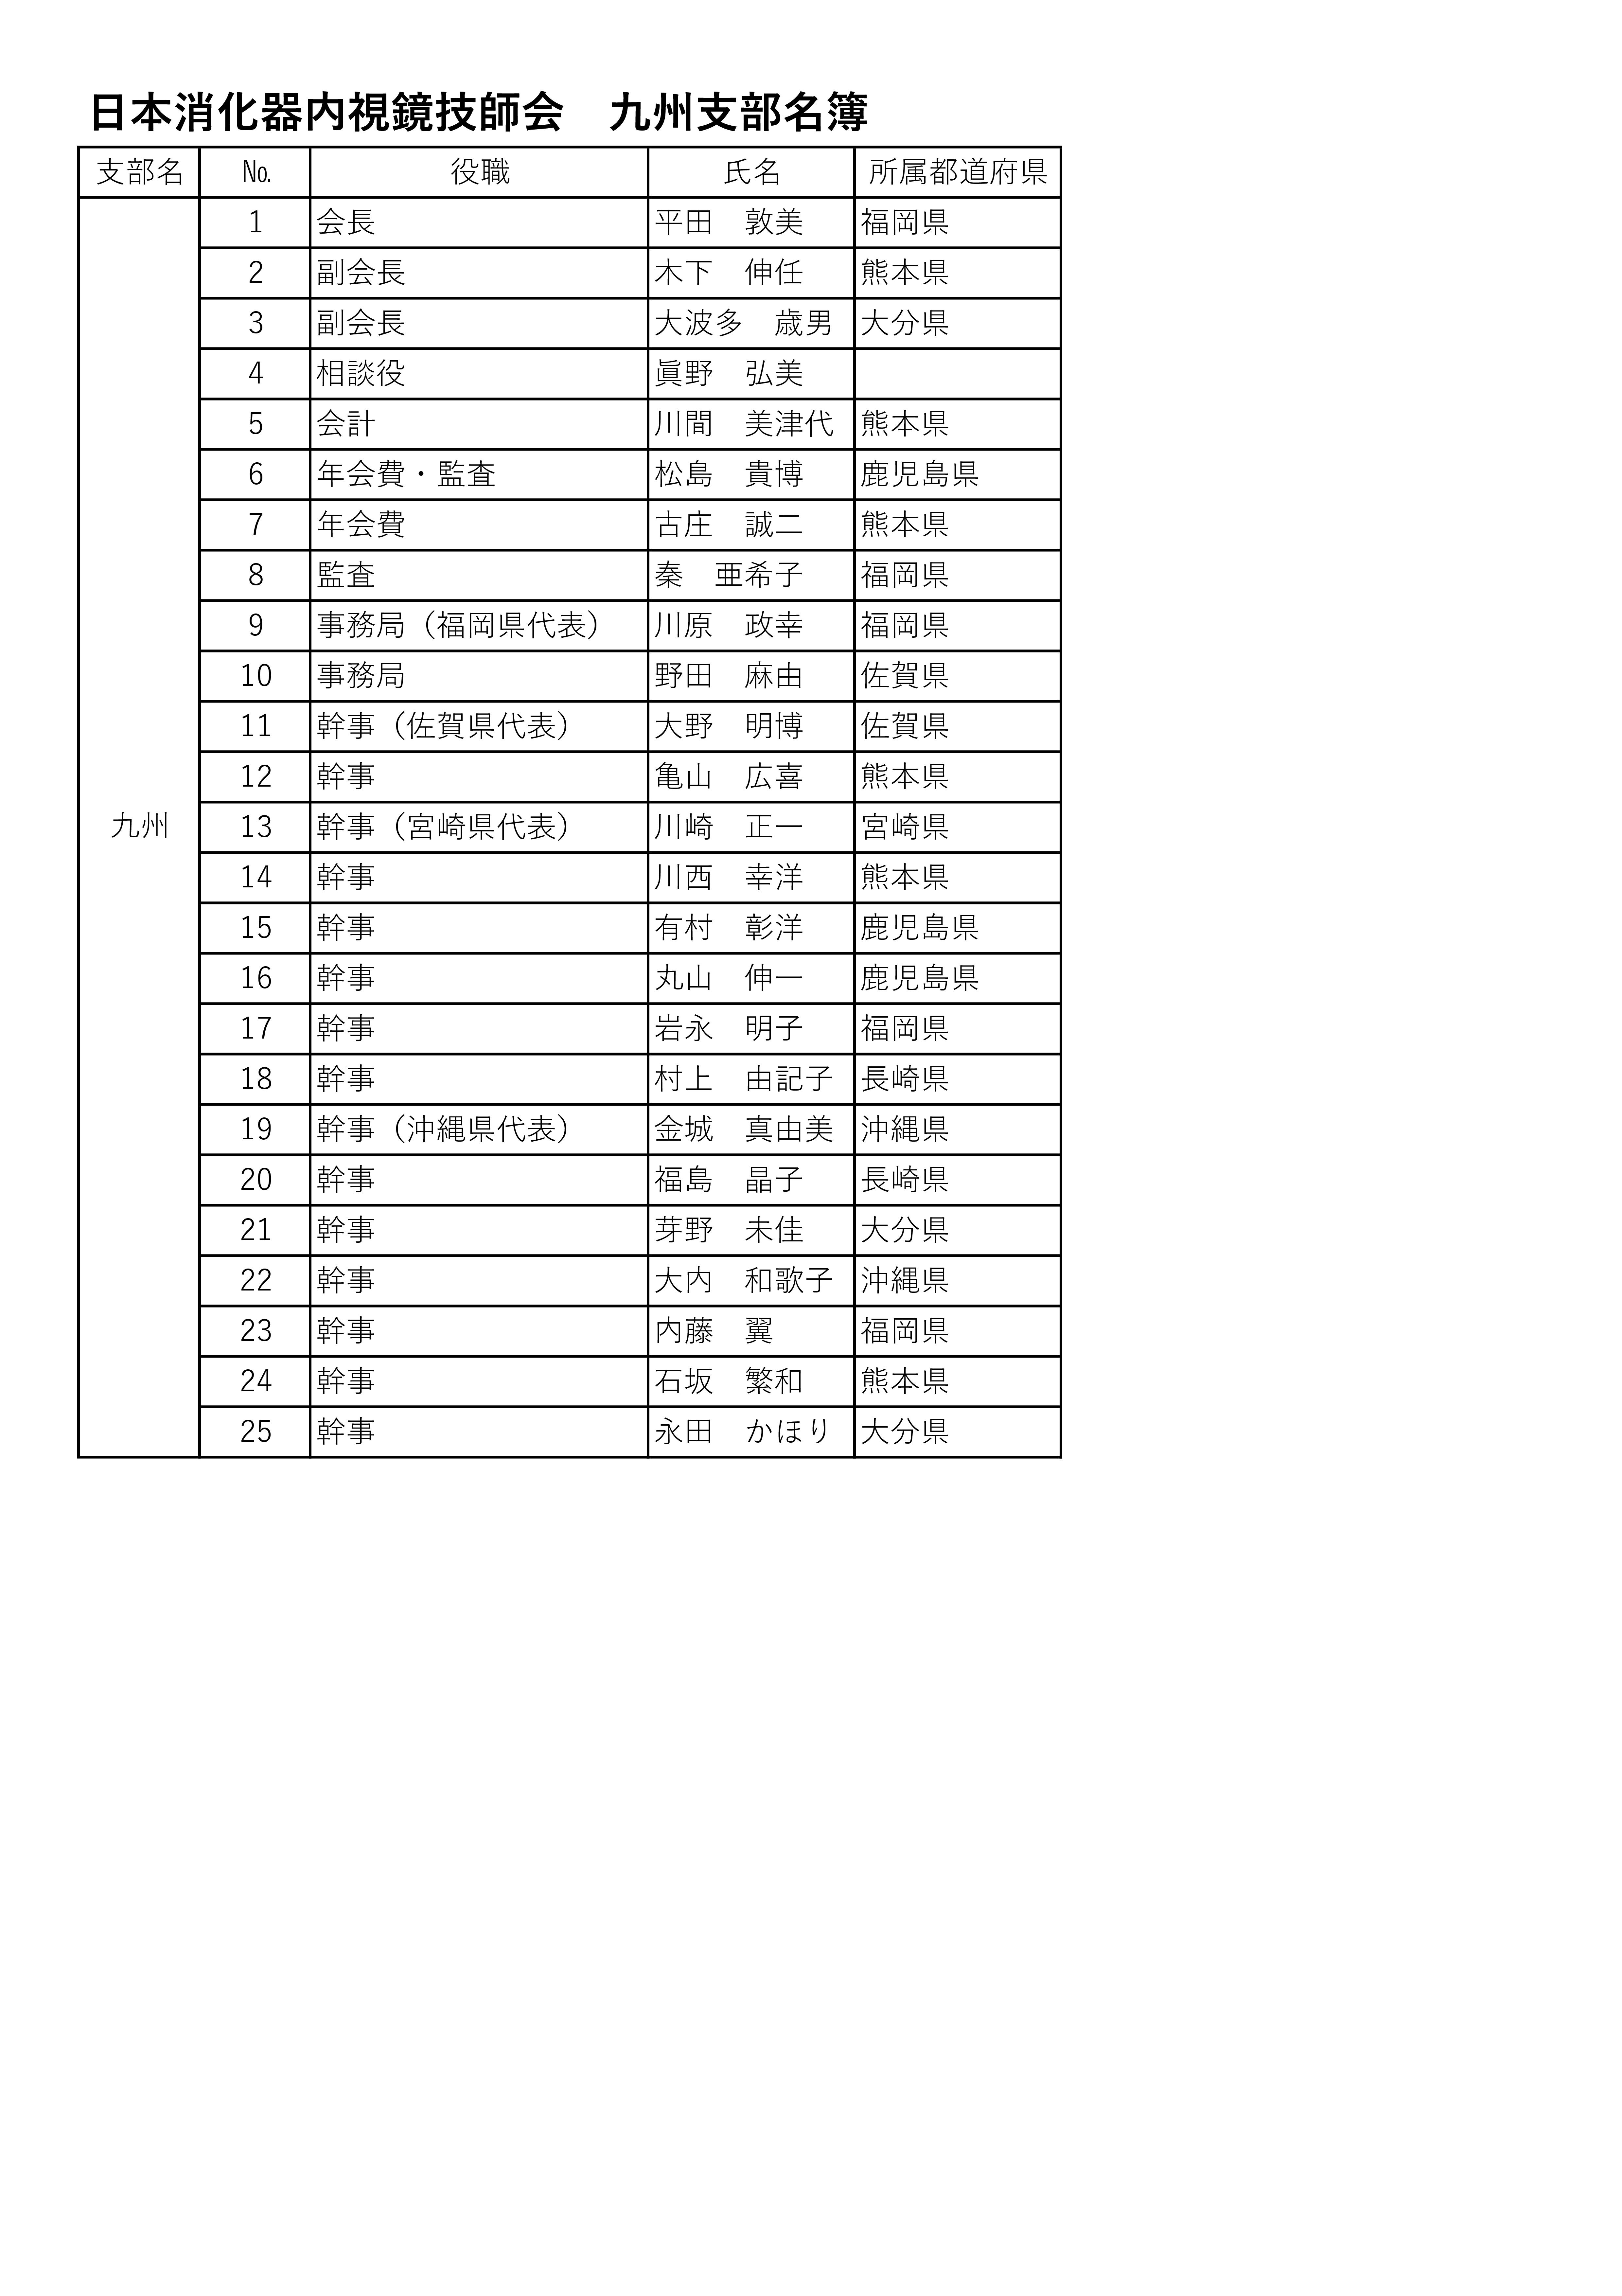 九州消化器内視鏡技師会 役員名簿